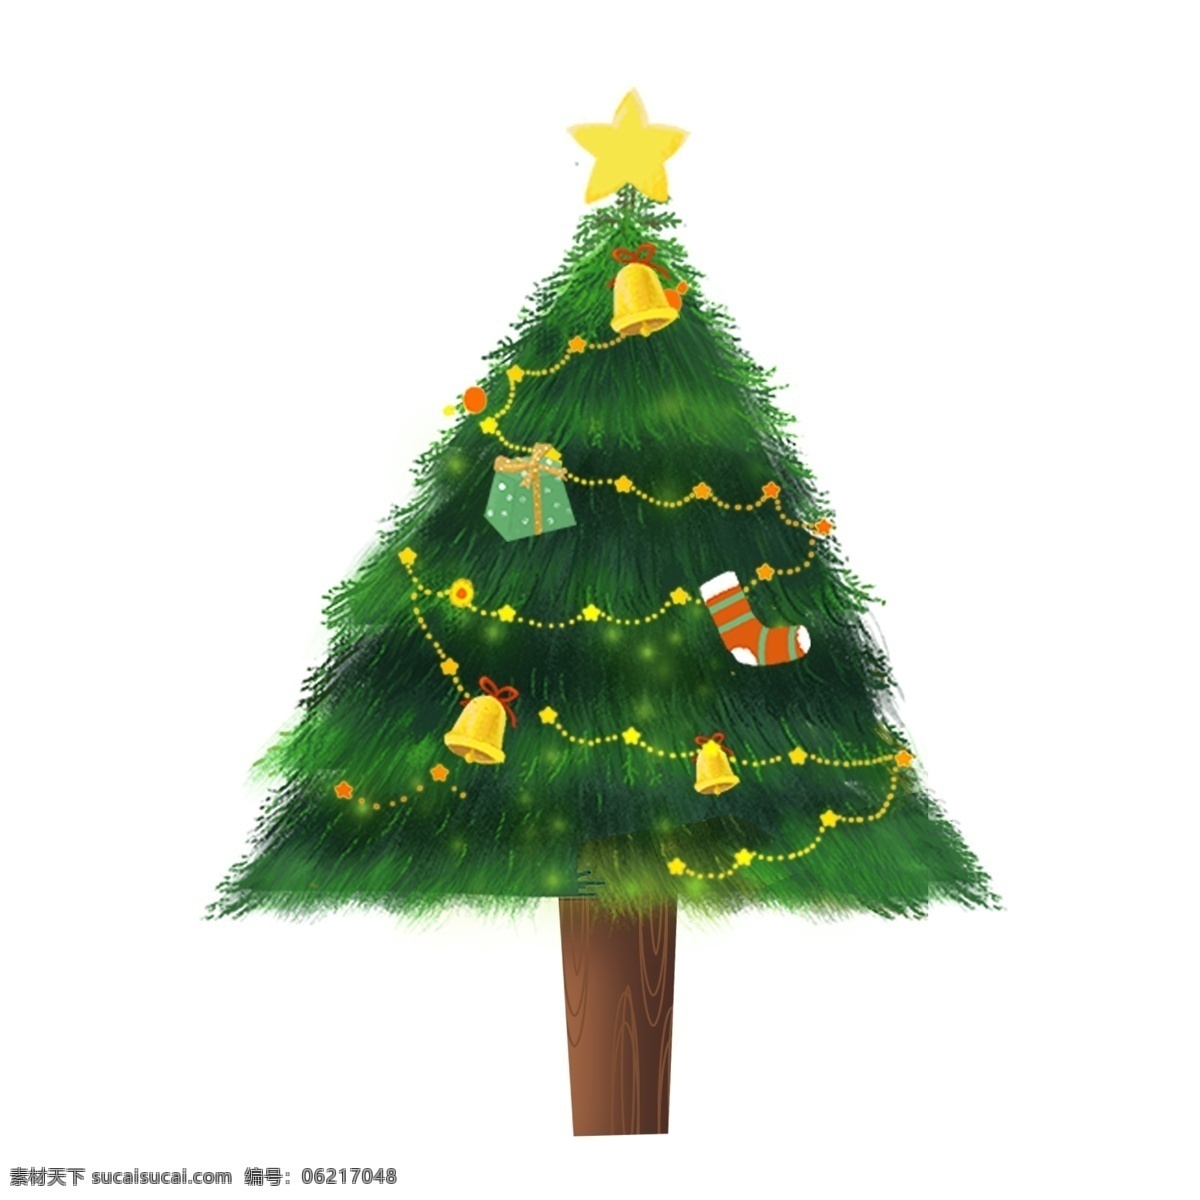 树木 装饰 圣诞 元素 圣诞元素 圣诞素材 圣诞装饰 圣诞节元素 圣诞节素材 圣诞节装饰 卡通圣诞节 植物 植物元素 植物素材 彩色灯 灯元素 灯素材 灯装饰 灯光影 元素设计 动漫动画 风景漫画